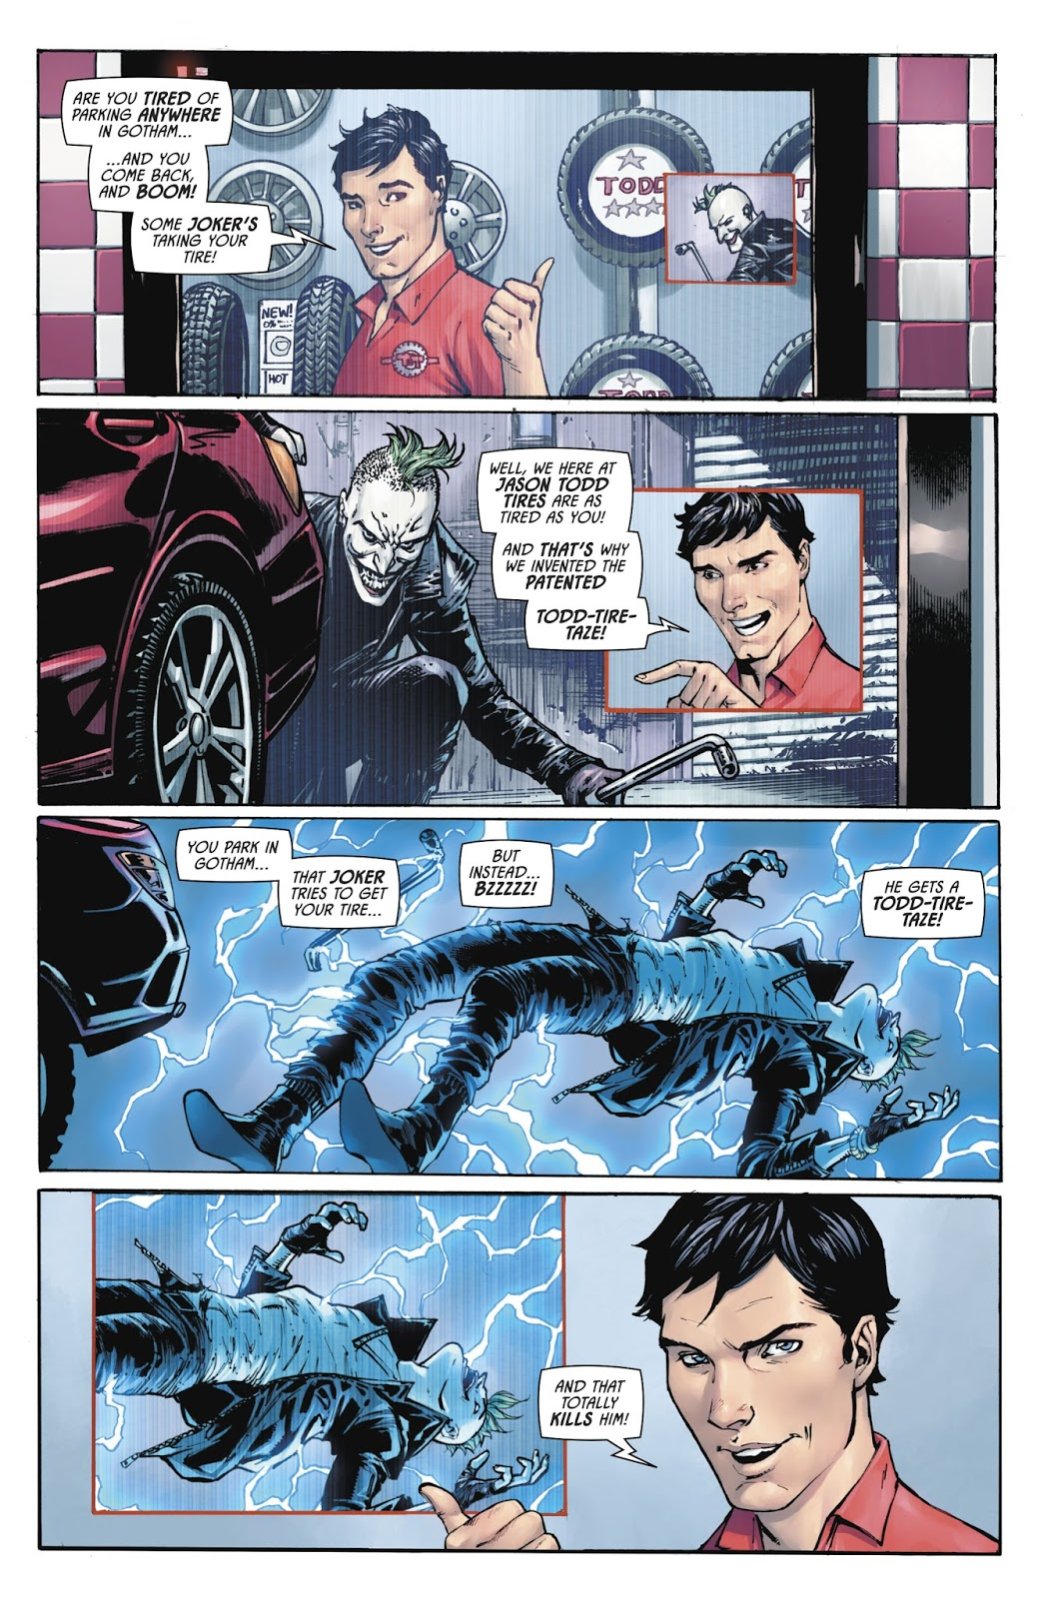 Галерея Как изменилась бы жизнь Брюса Уэйна, если бы его родители не погибли и он не стал бы Бэтменом? - 5 фото